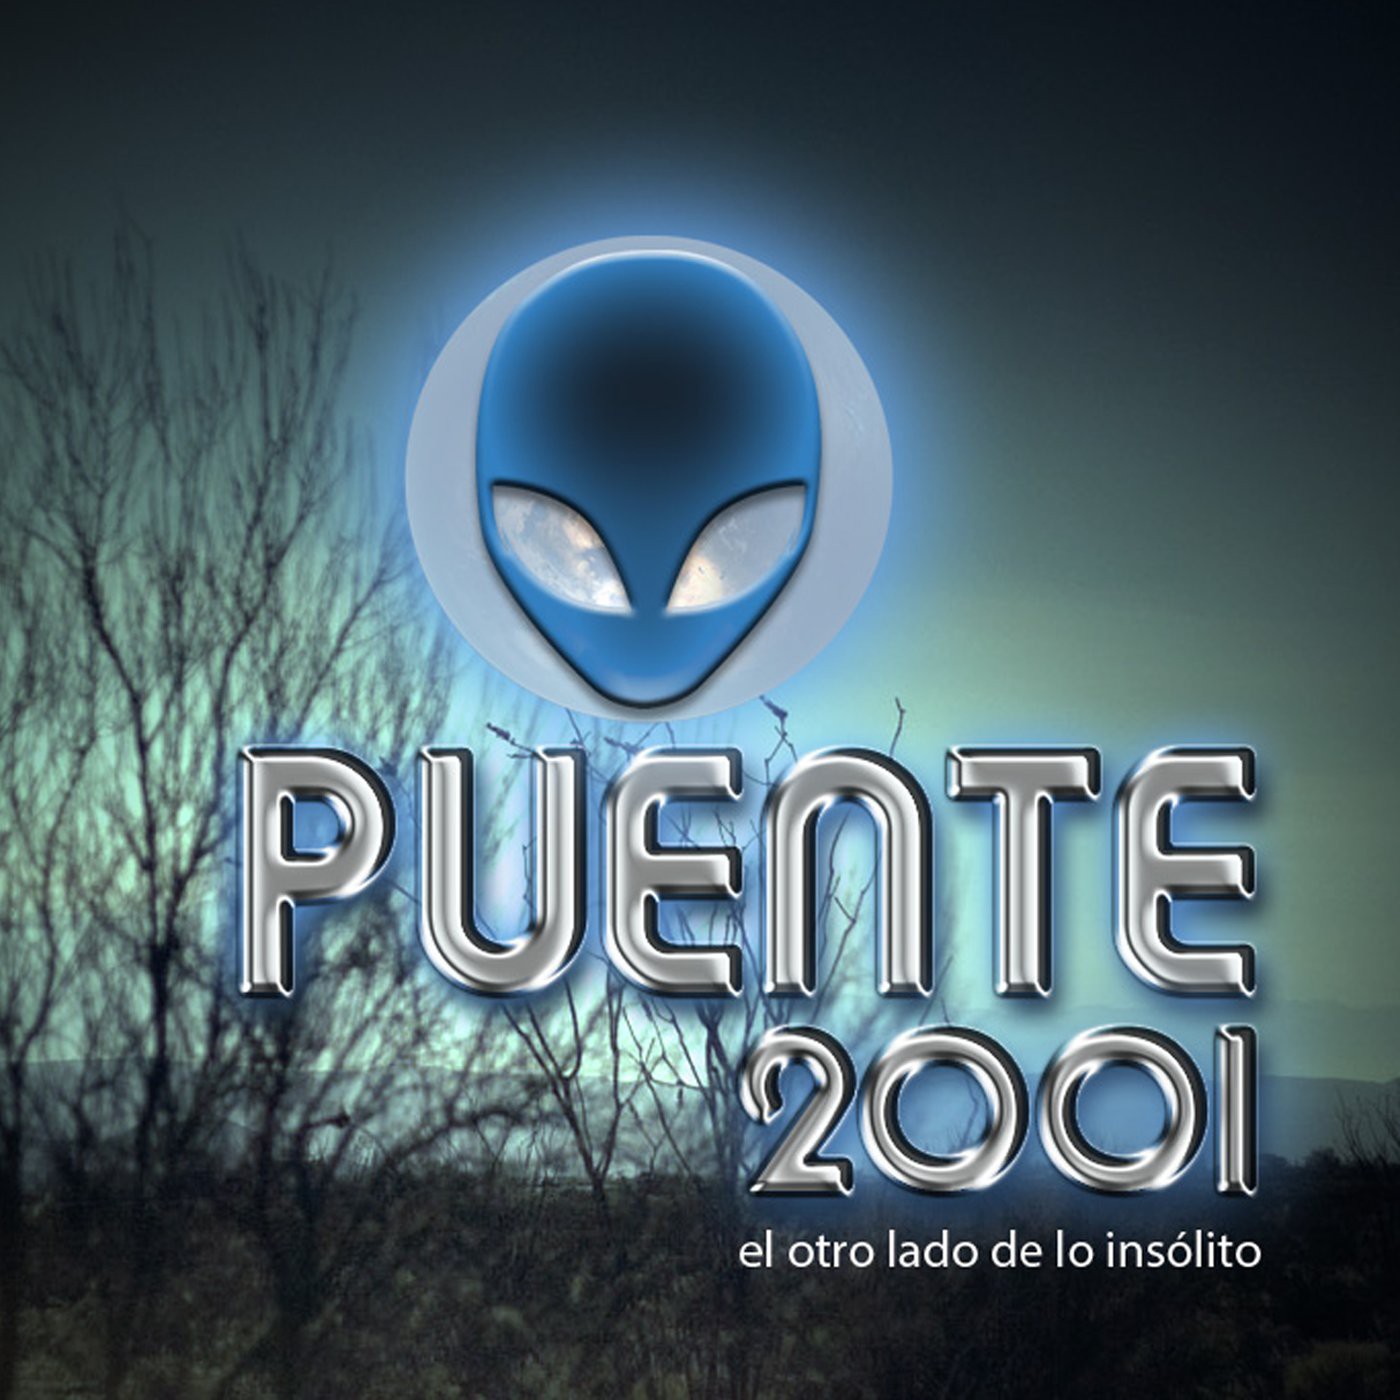 Puente 2001 / temporada 2018 programa 99